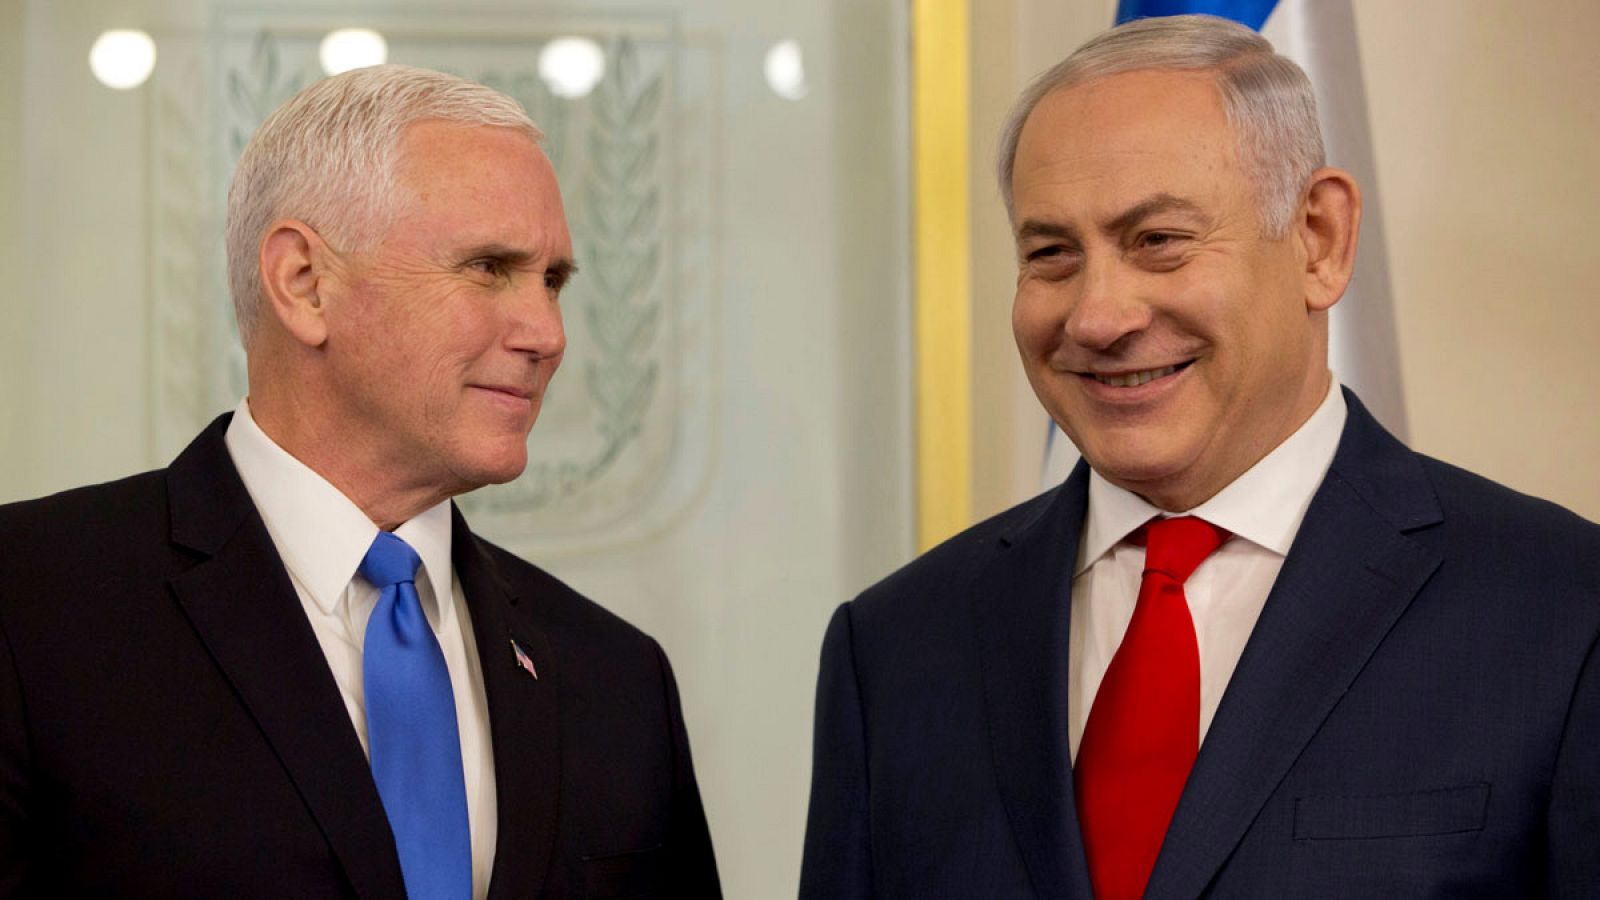 El vicepresidente estadounidense, Mike Pence, durante su reunión en Jerusalén con el primer ministro israelí, Benjamin Netanyahu